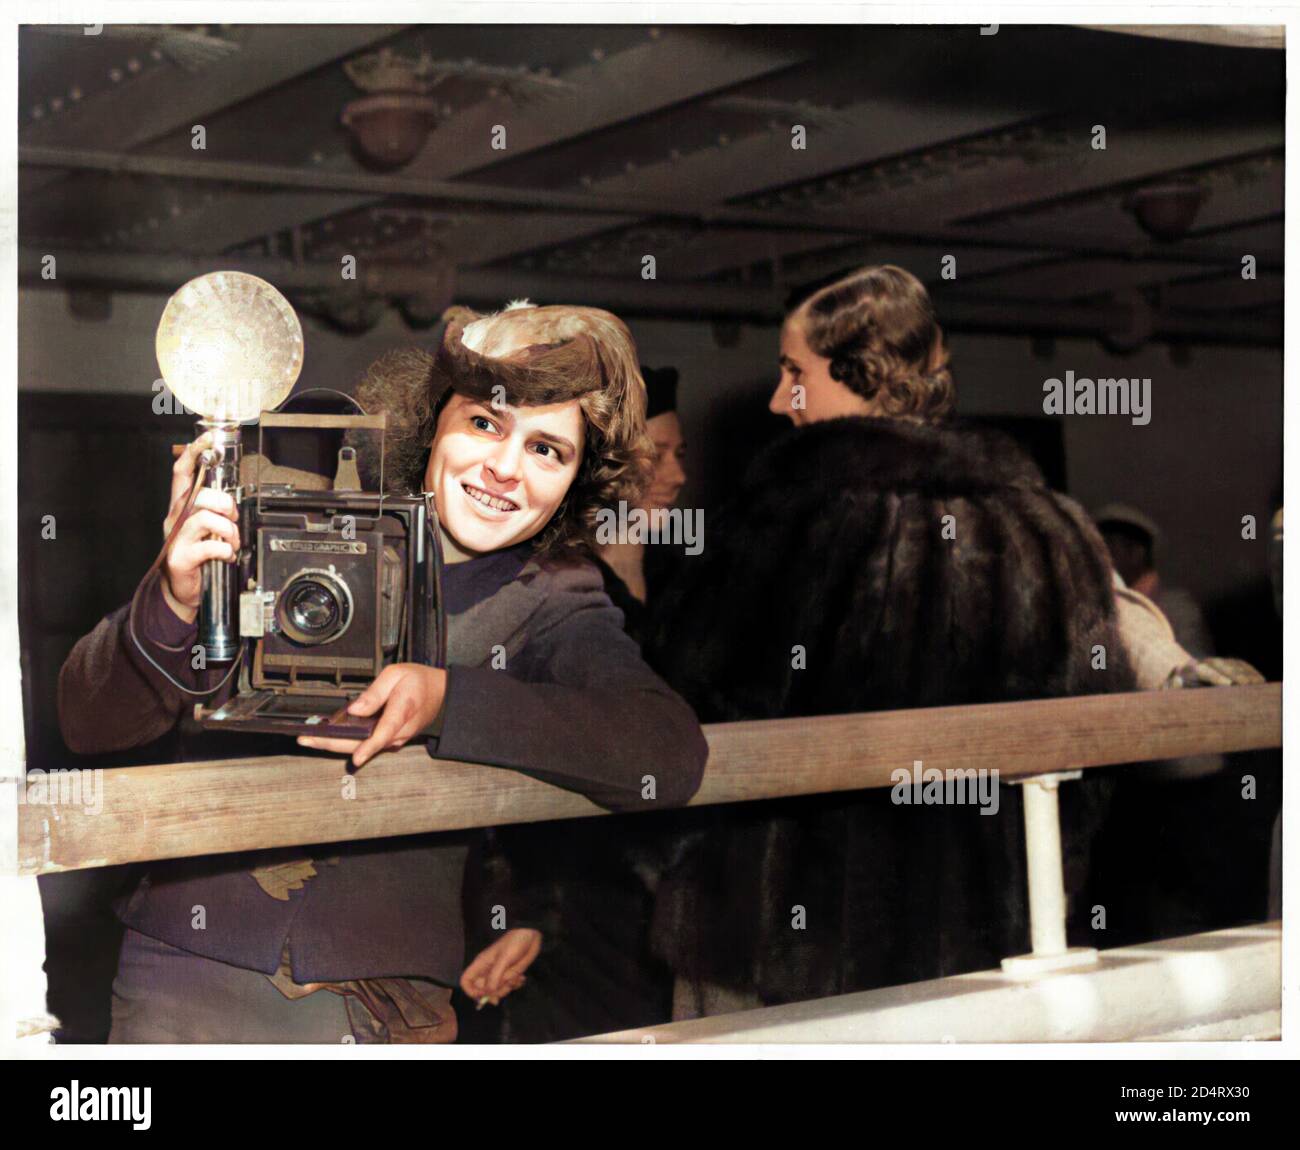 1939 , NEW YORK , Etats-Unis : la célèbre photographe américaine Margaret BOURKE-WHITE ( 1904 - 1971 ) au travail dans le port de NY sur un bateau sur la route de LA GUERRE en EUROPE . Portrait par photographe inconnu . À l'époque, Margaret a épousé la célèbre romancière Erskine Caldwell . Bourke-White a été la première femme correspondante de guerre connue et la première femme à être autorisée à travailler dans les zones de combat pendant la Seconde Guerre mondiale En 1941, elle a voyagé en Union soviétique et de 1942 a été attaché à l'armée de l'air américaine en Afrique du Nord , puis à l'armée américaine en Italie et plus tard en Allemagne .- NUMÉRIQUEMENT COLO Banque D'Images